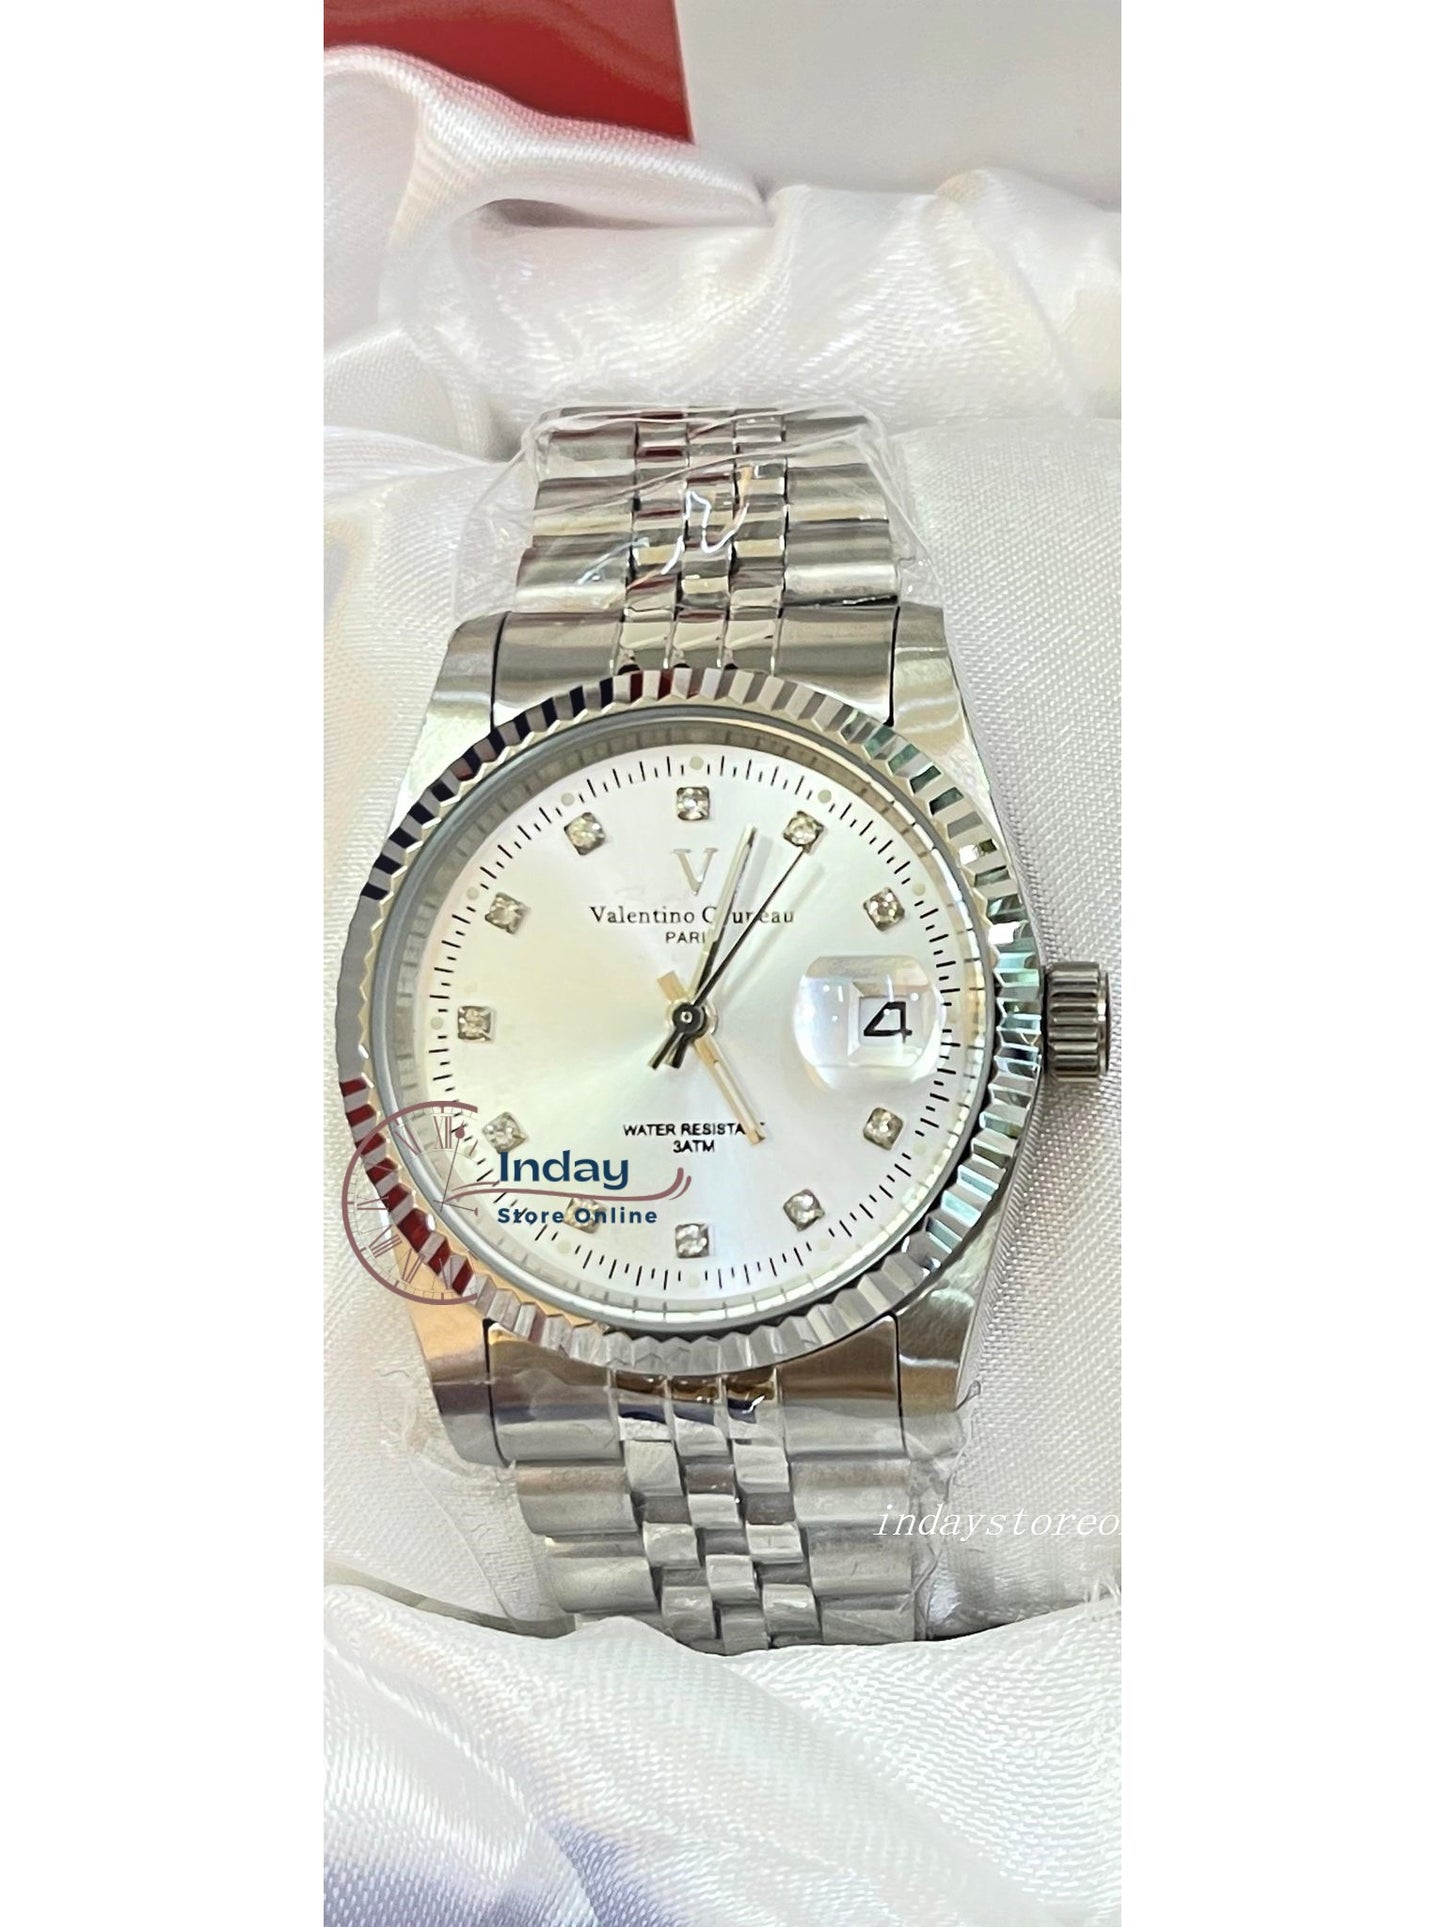 范倫鐵諾 古柏 Valentino Coupeau Men's Watch 12169SM-15